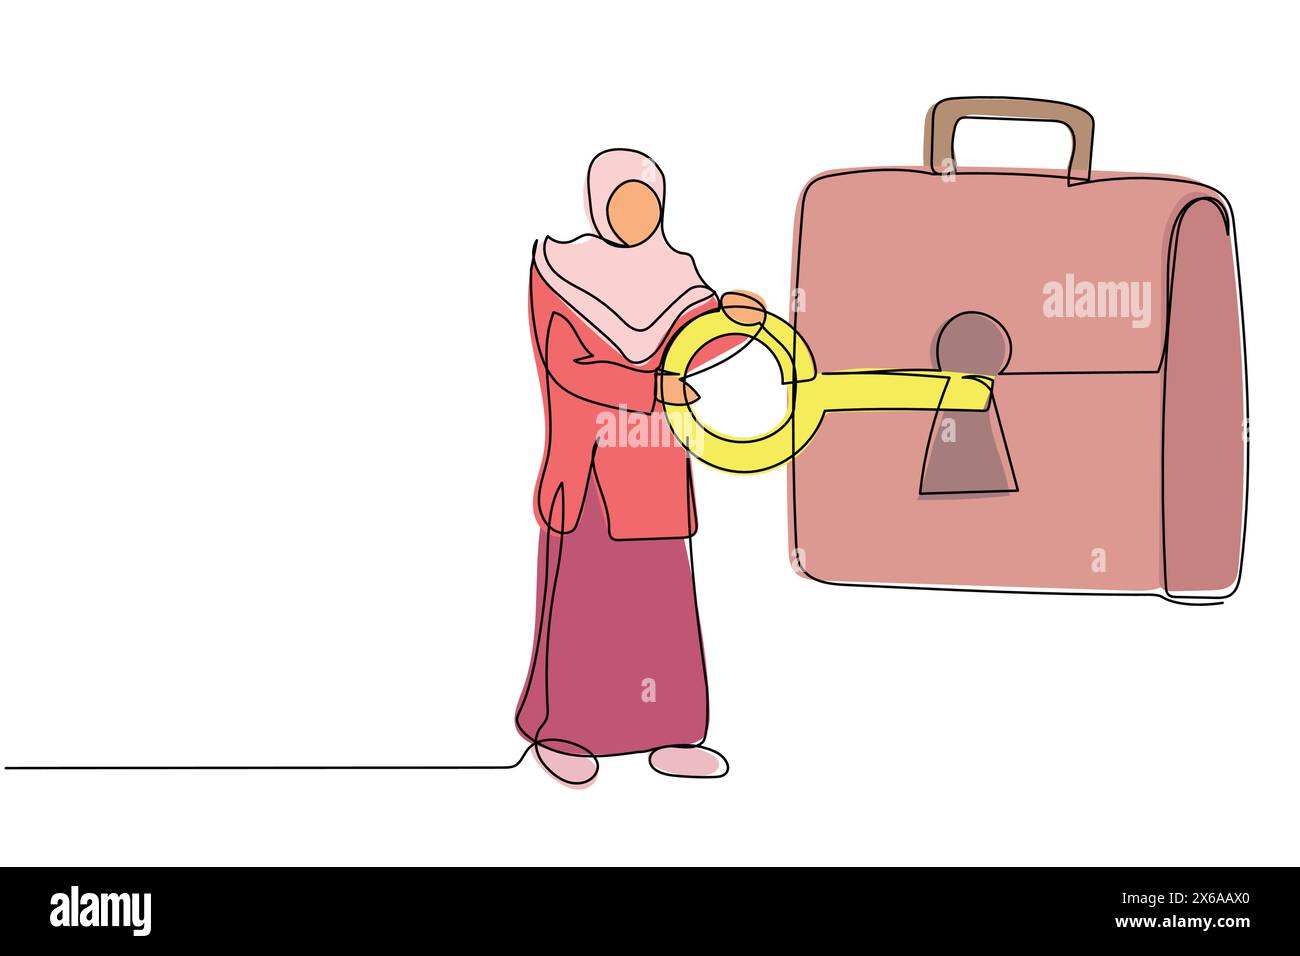 Durchgehende, einzeilige arabische Geschäftsfrau, die den Schlüssel in die Aktentasche steckt. Sicherheitstasche für geheimes Dokument. Anlageportfolio, Wertpapiere, Aktien Stock Vektor